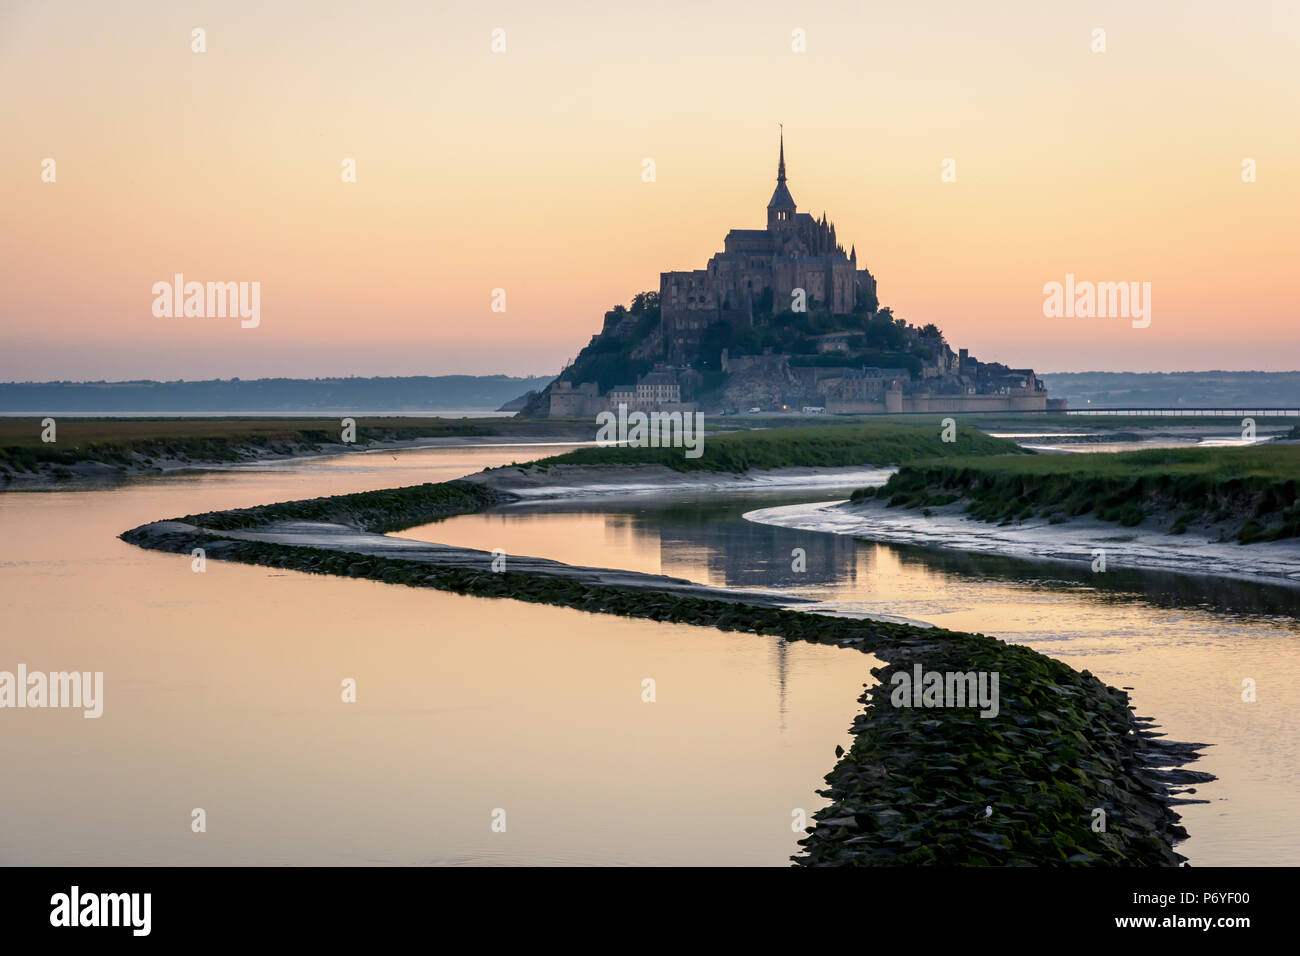 Der Mont Saint-Michel in der Normandie, Frankreich, bei Sonnenaufgang und Flut mit den warmen Farben des Himmels spiegelt sich in den Gewässern des Couesnon. Stockfoto